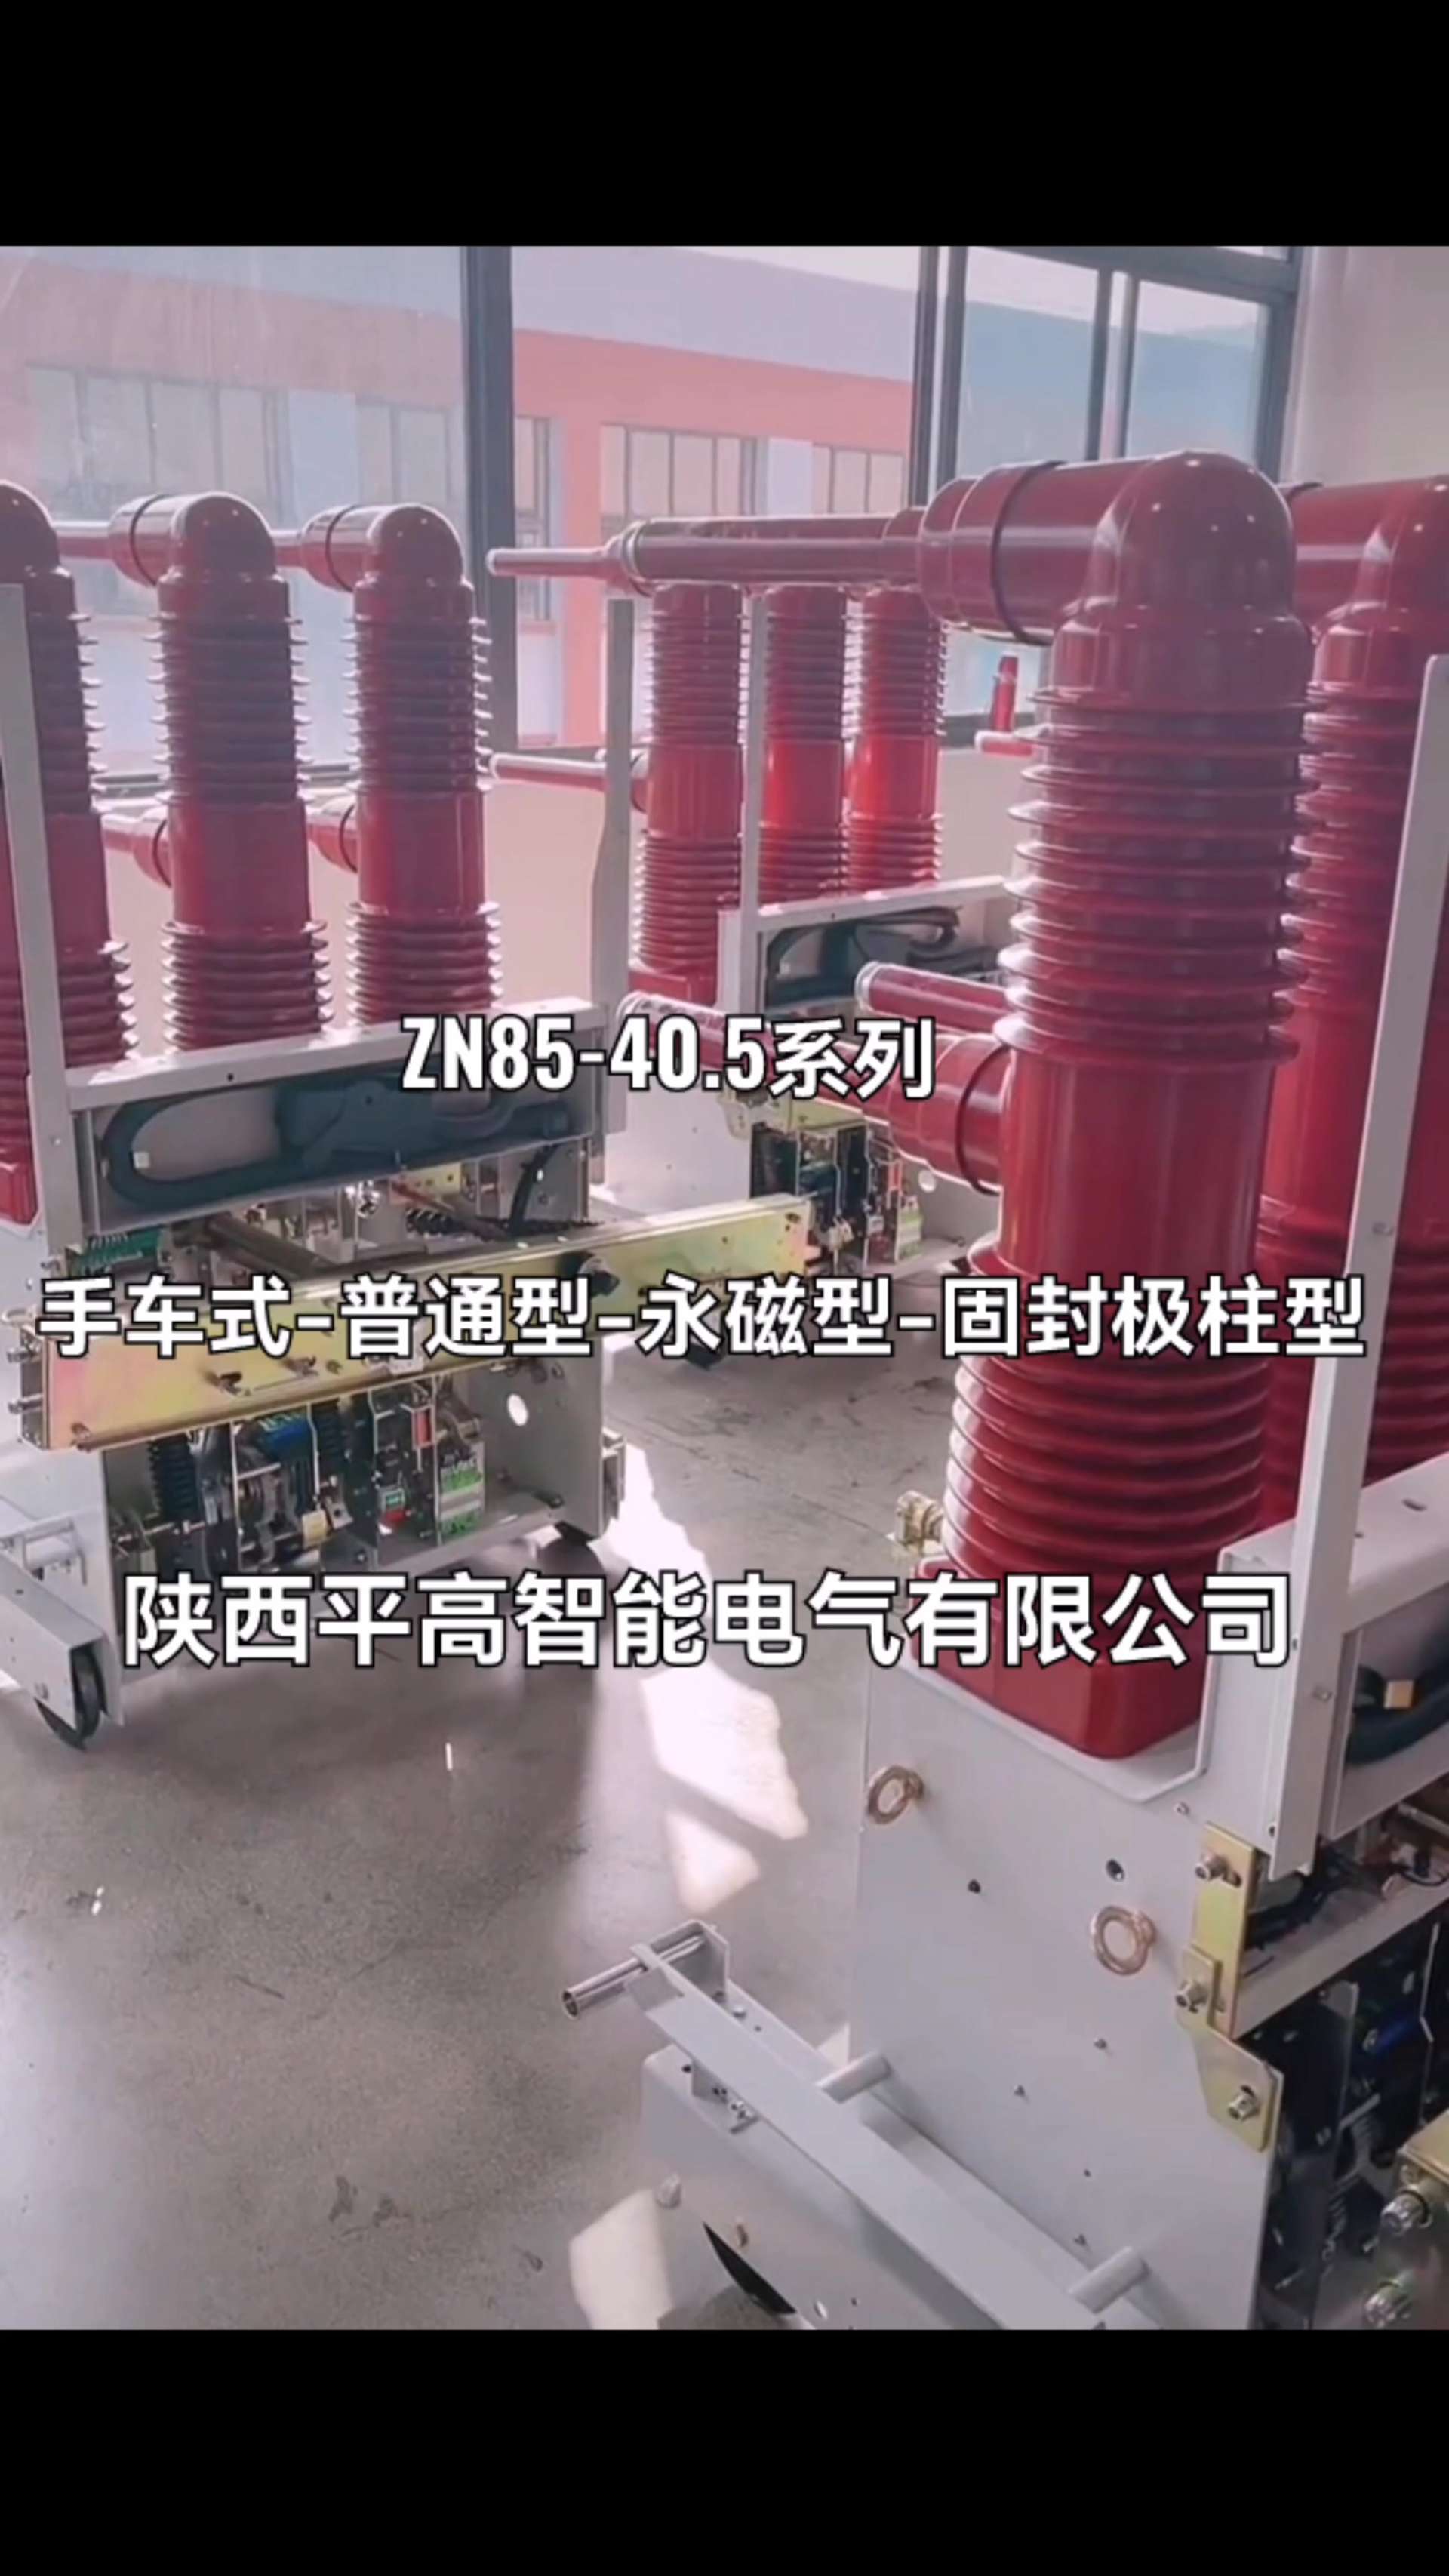 ZN85-40.5系列35kv户内高压真空断路器厂家